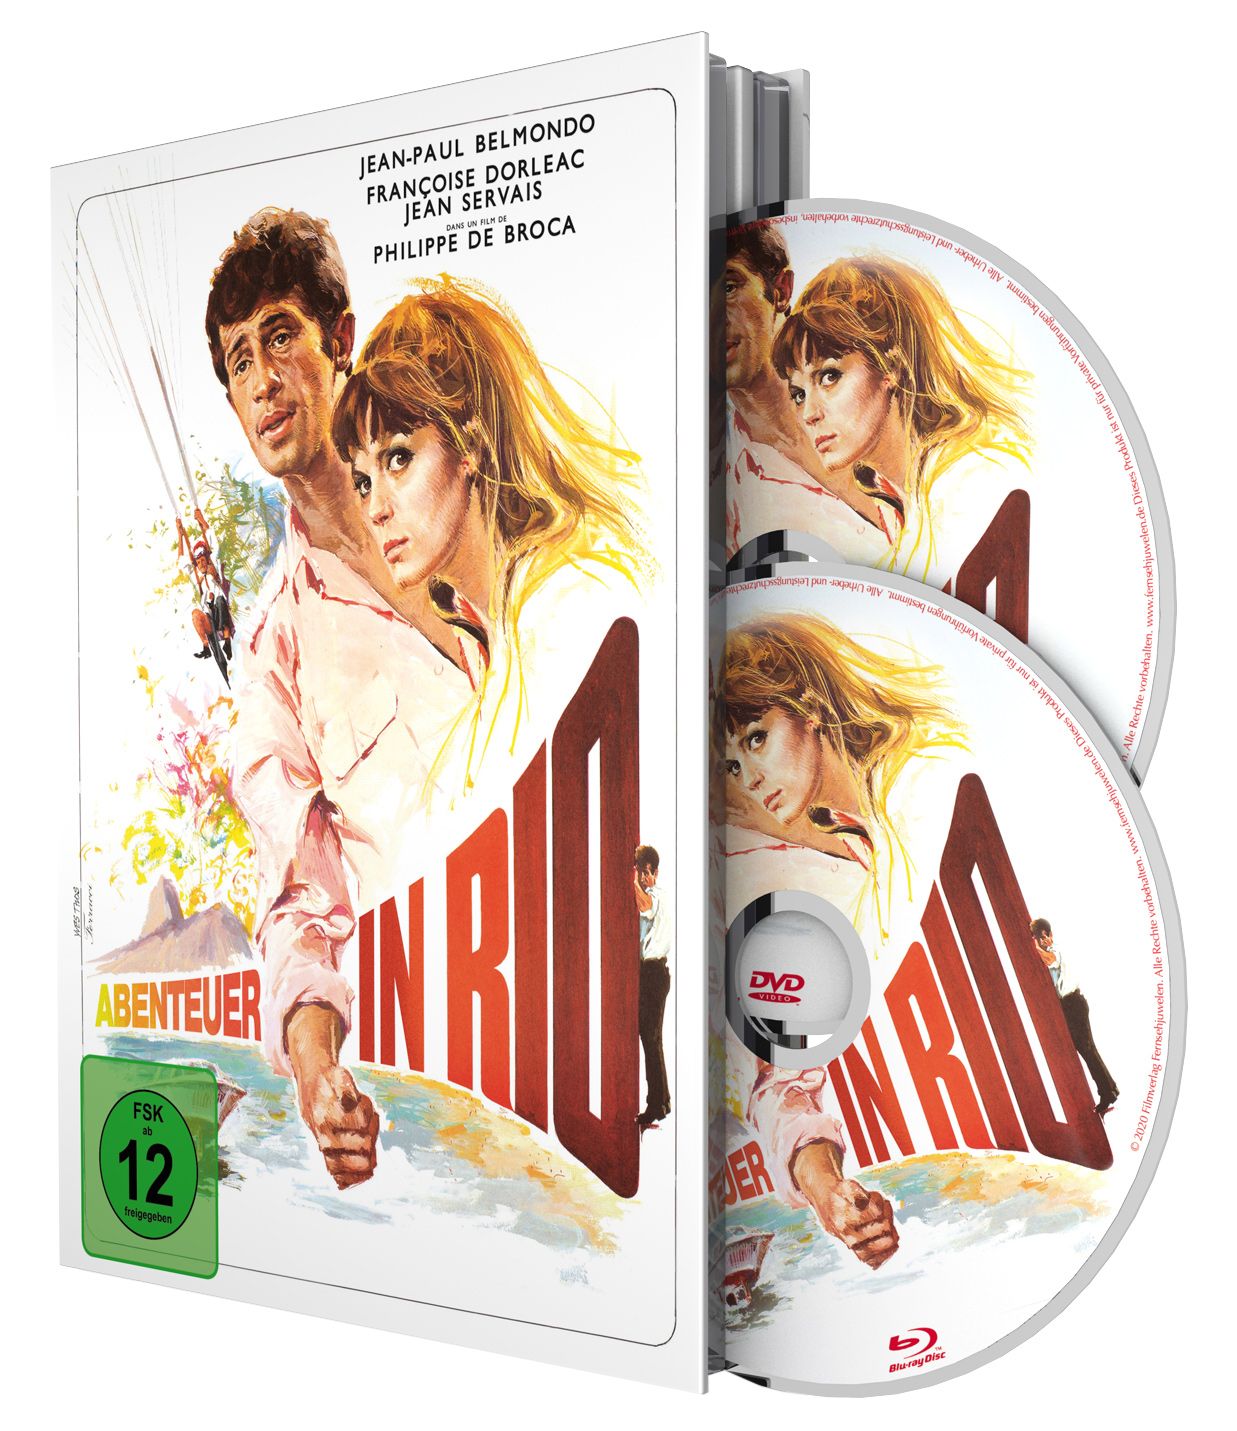 Abenteuer in Rio - Special Edition Mediabook (Blu-ray + DVD)